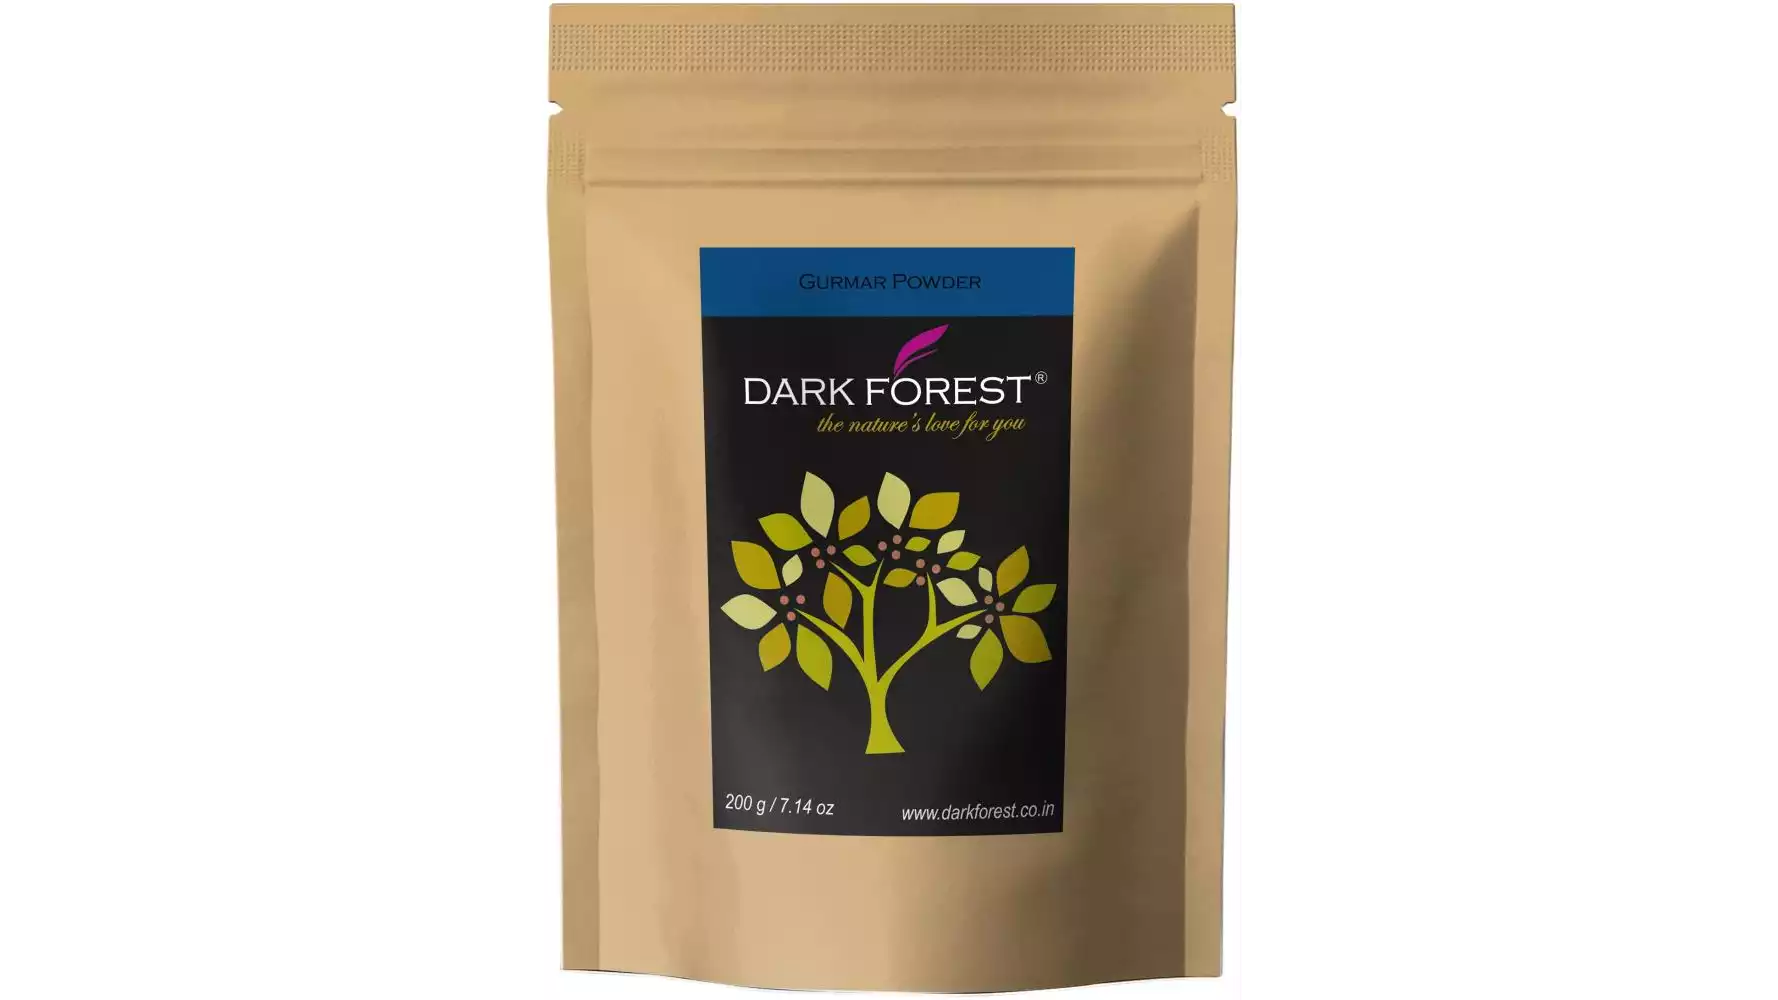 Dark Forest Gurmar (Gymnema) Powder (200g)